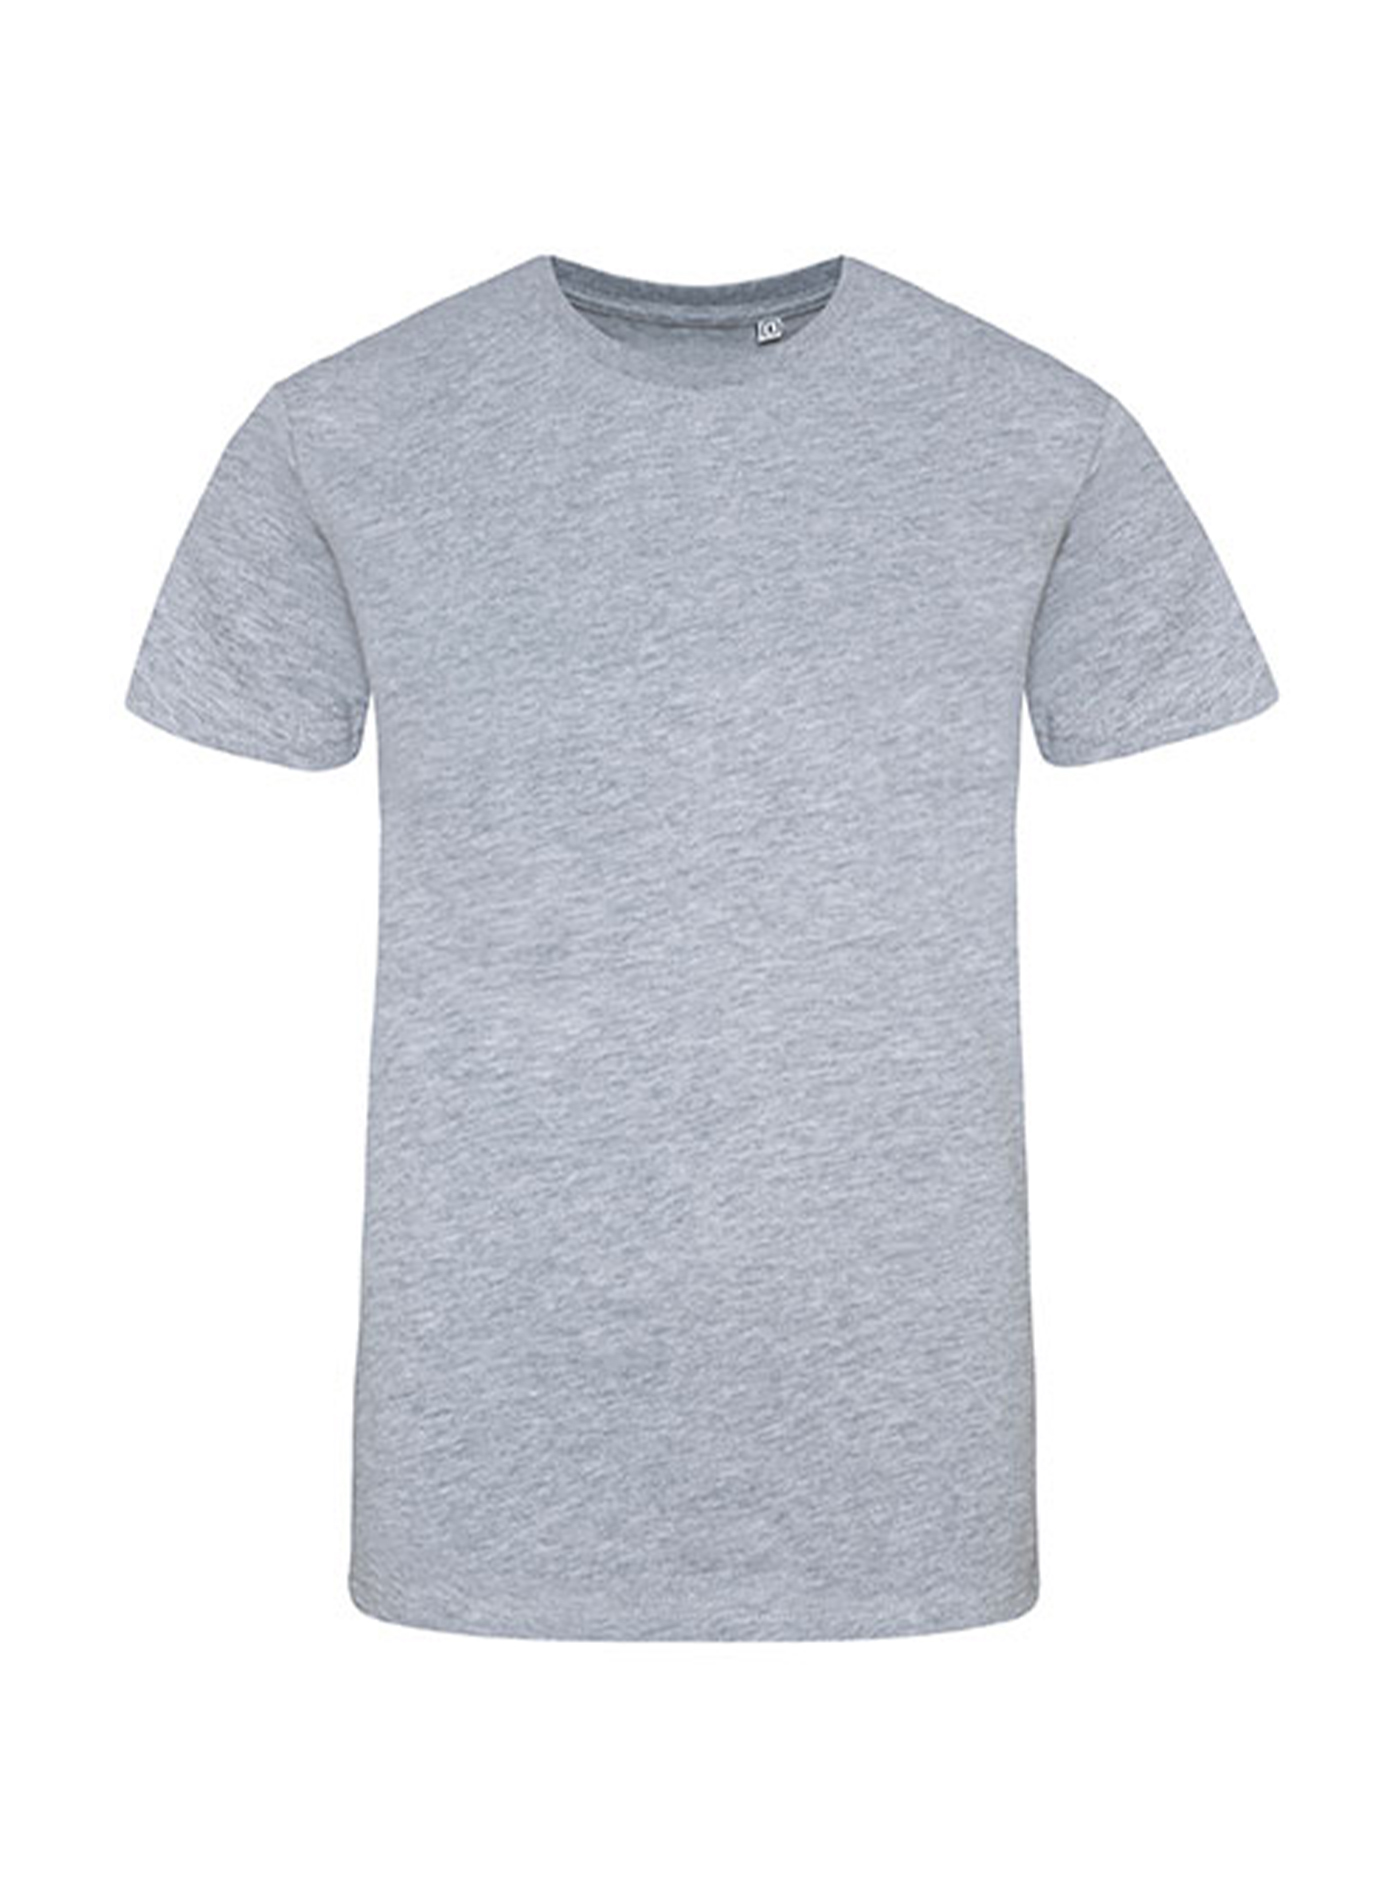 Pánské tričko Just Ts - Šedý melír L